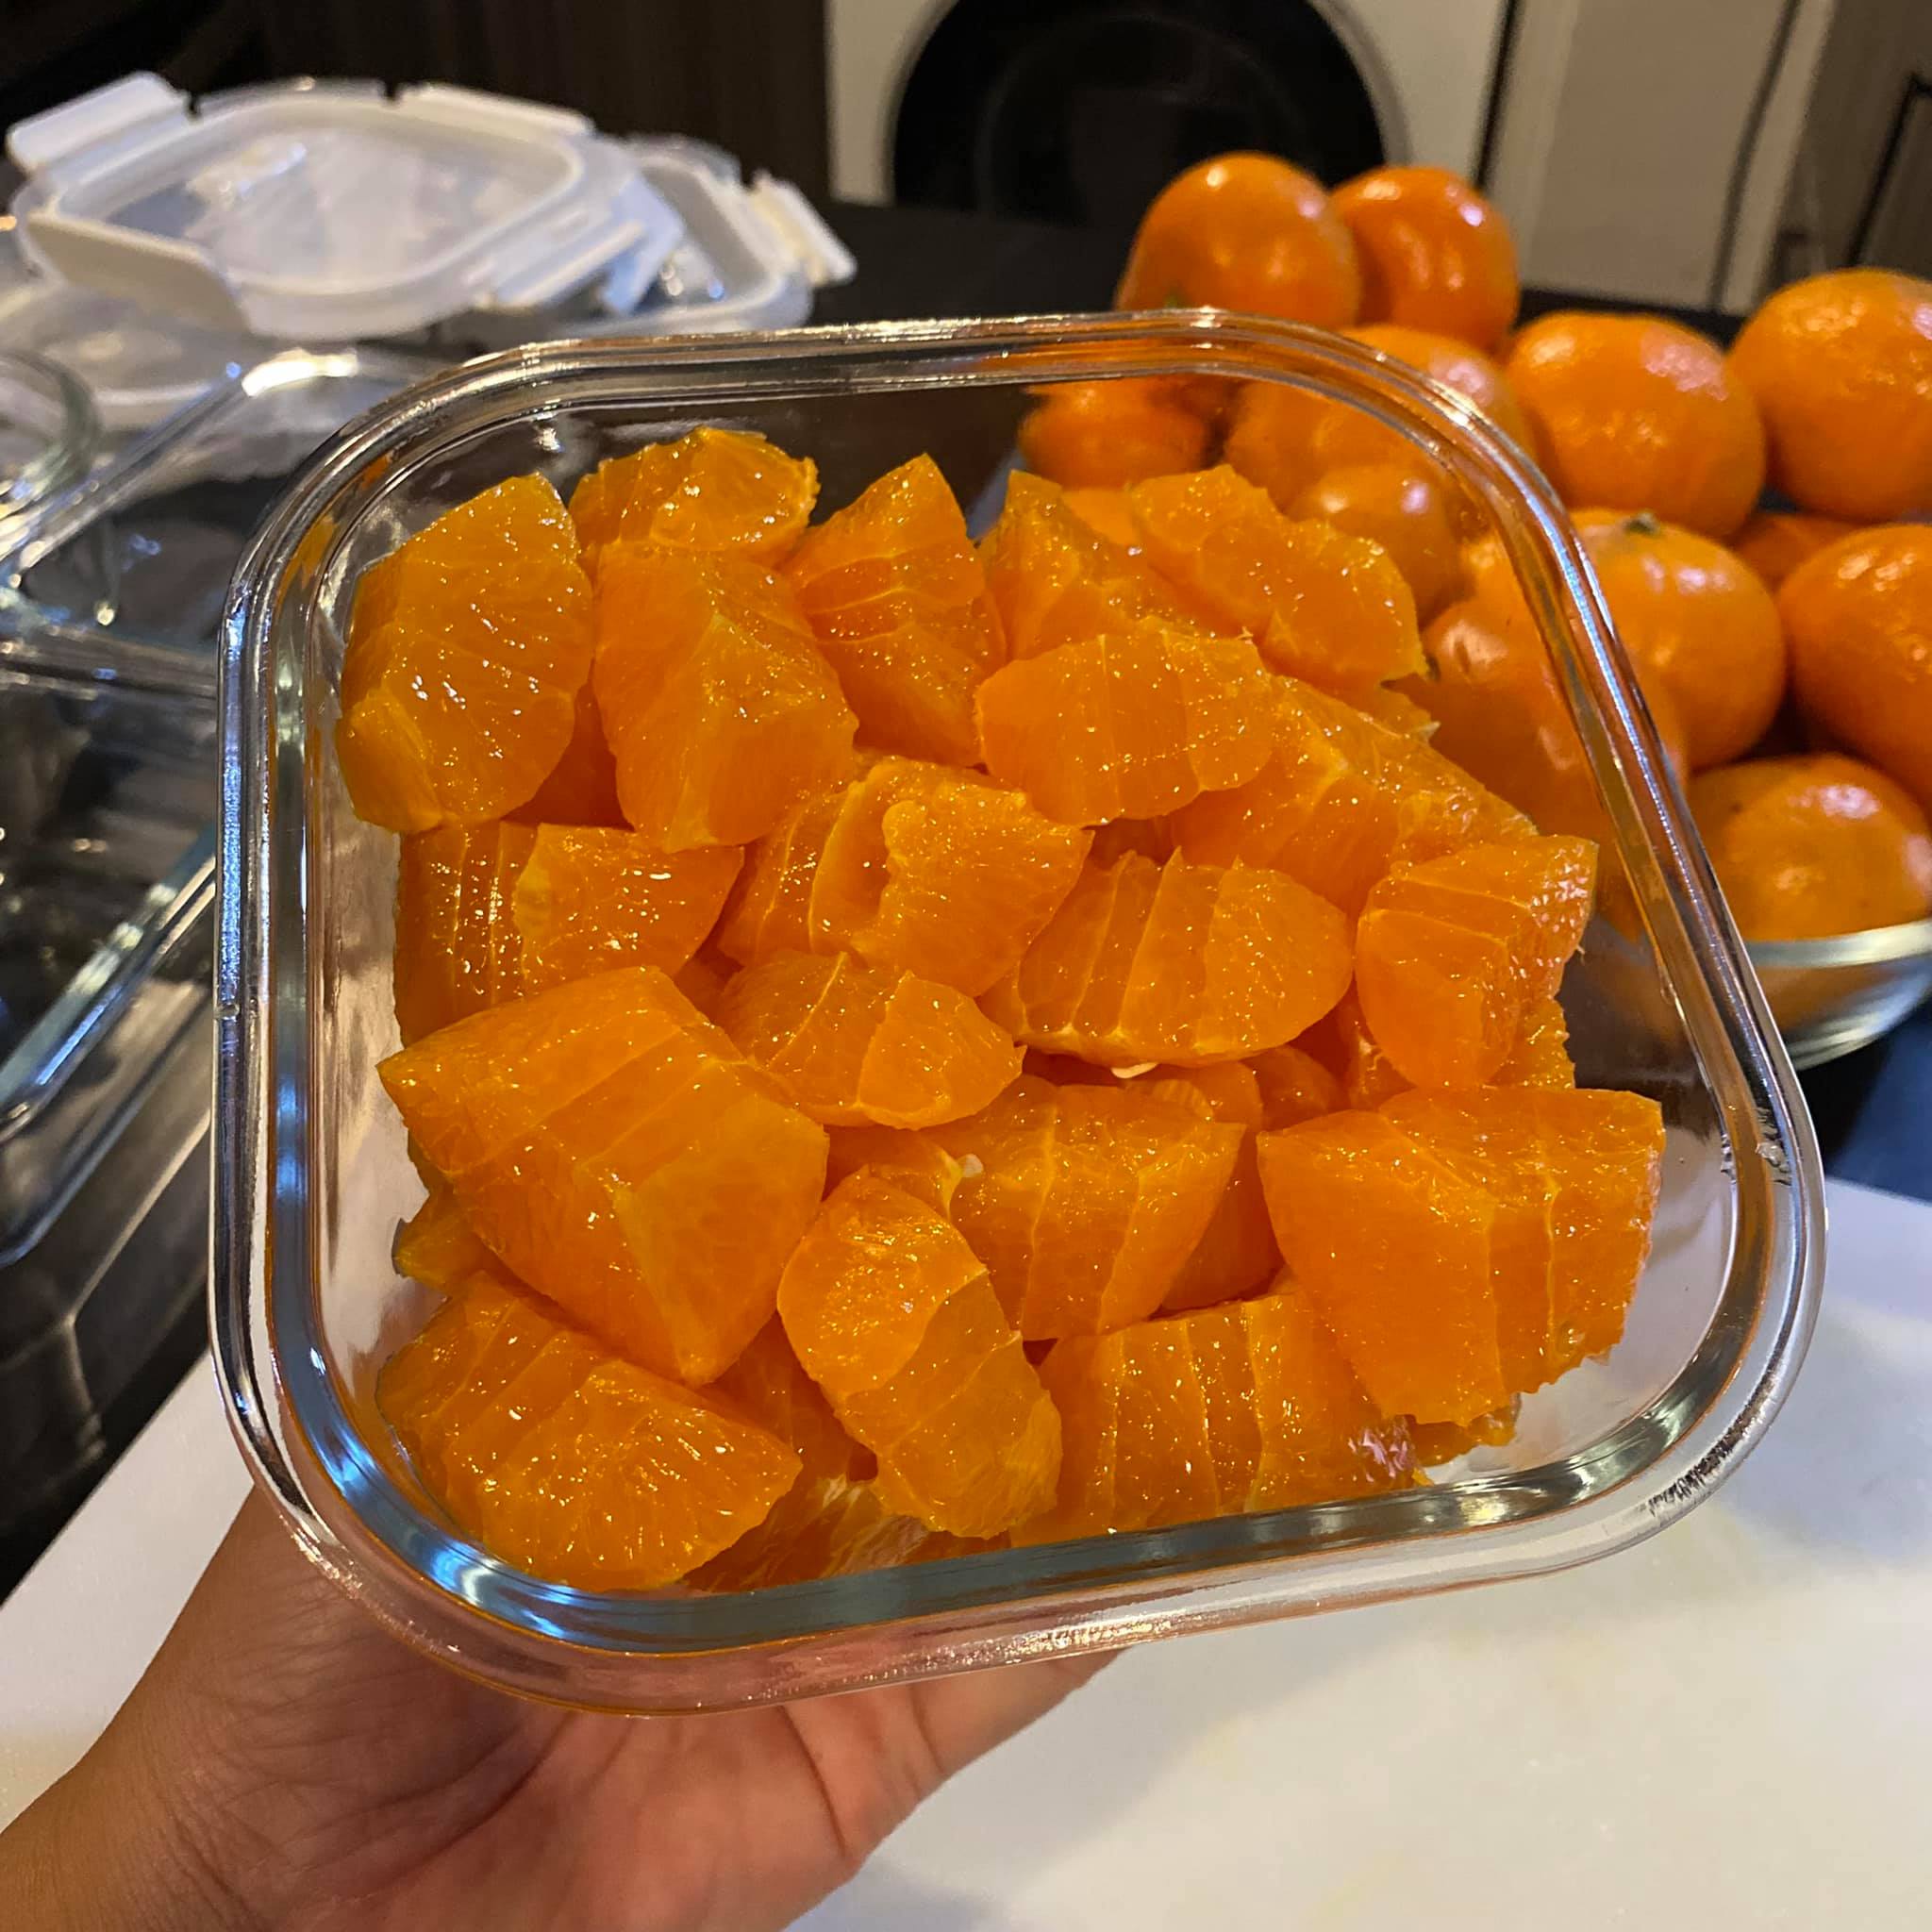 ปอกส้มยังไงให้น่าทาน1